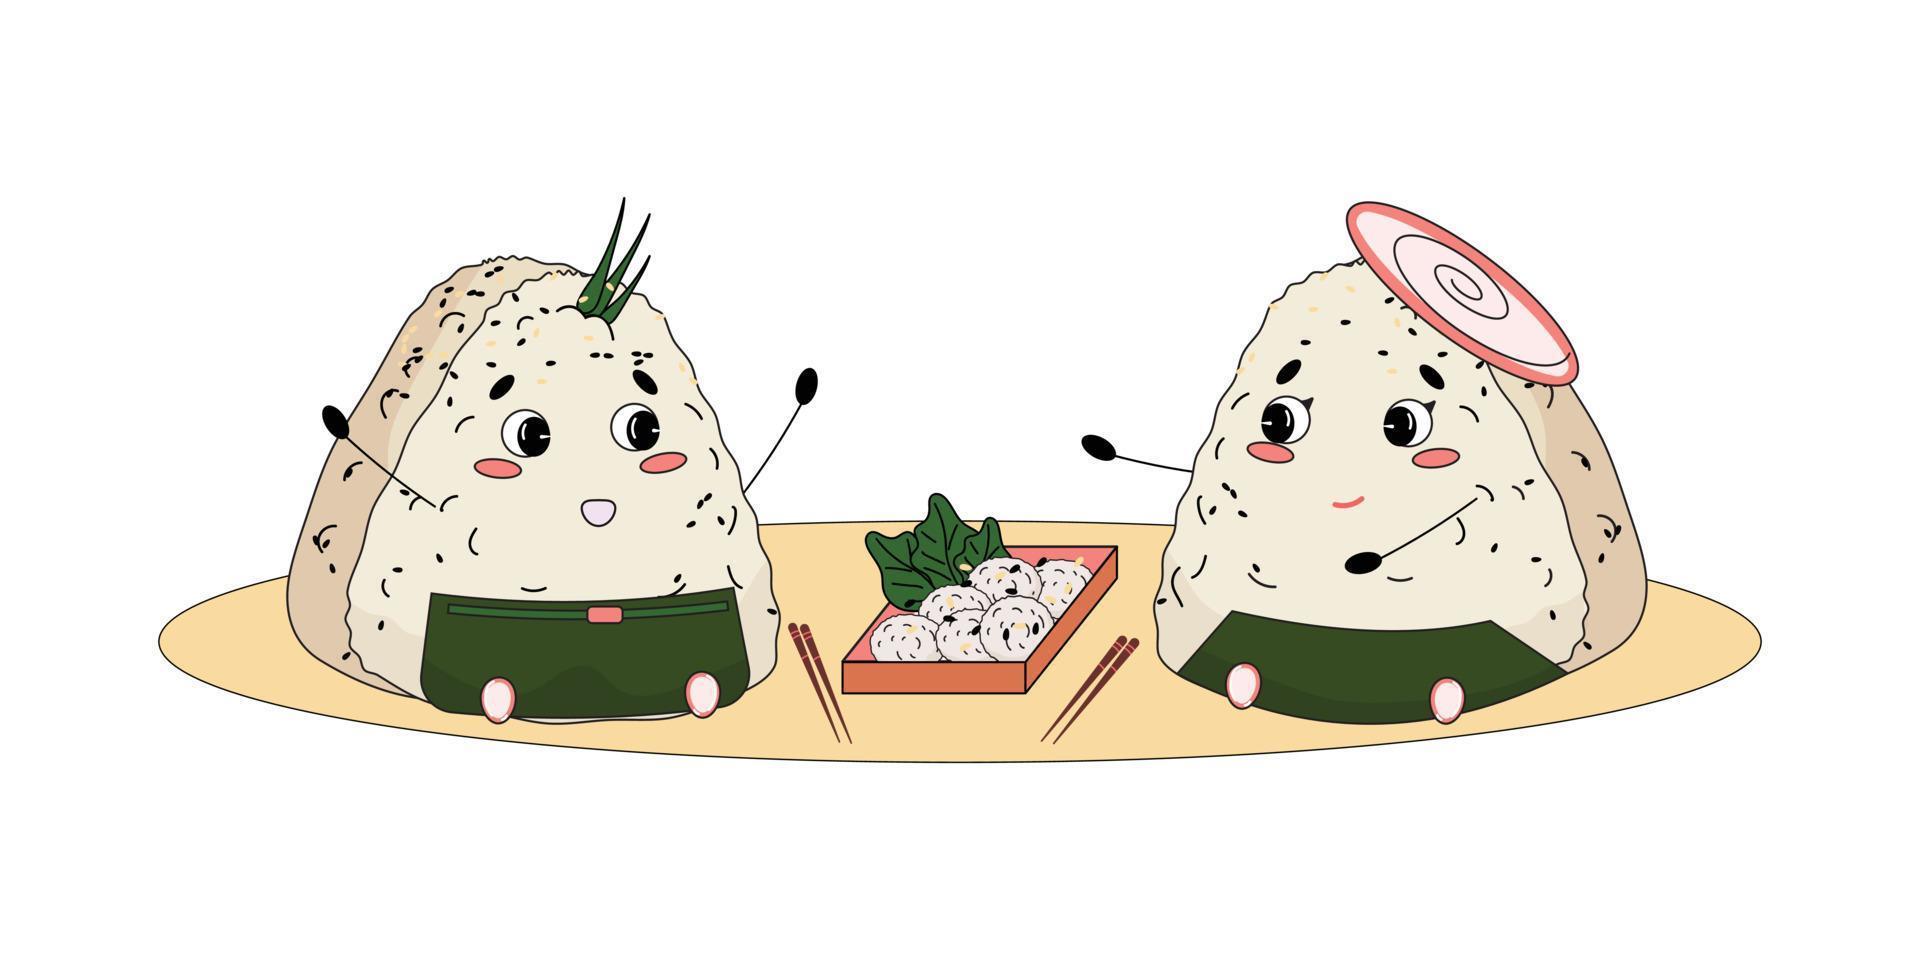 casal onigiri fofo fazendo um piquenique japonês e conversando. Bolinho de arroz japonês triangular envolto com alga nori. estilo mangá japonês. ilustração vetorial. vetor